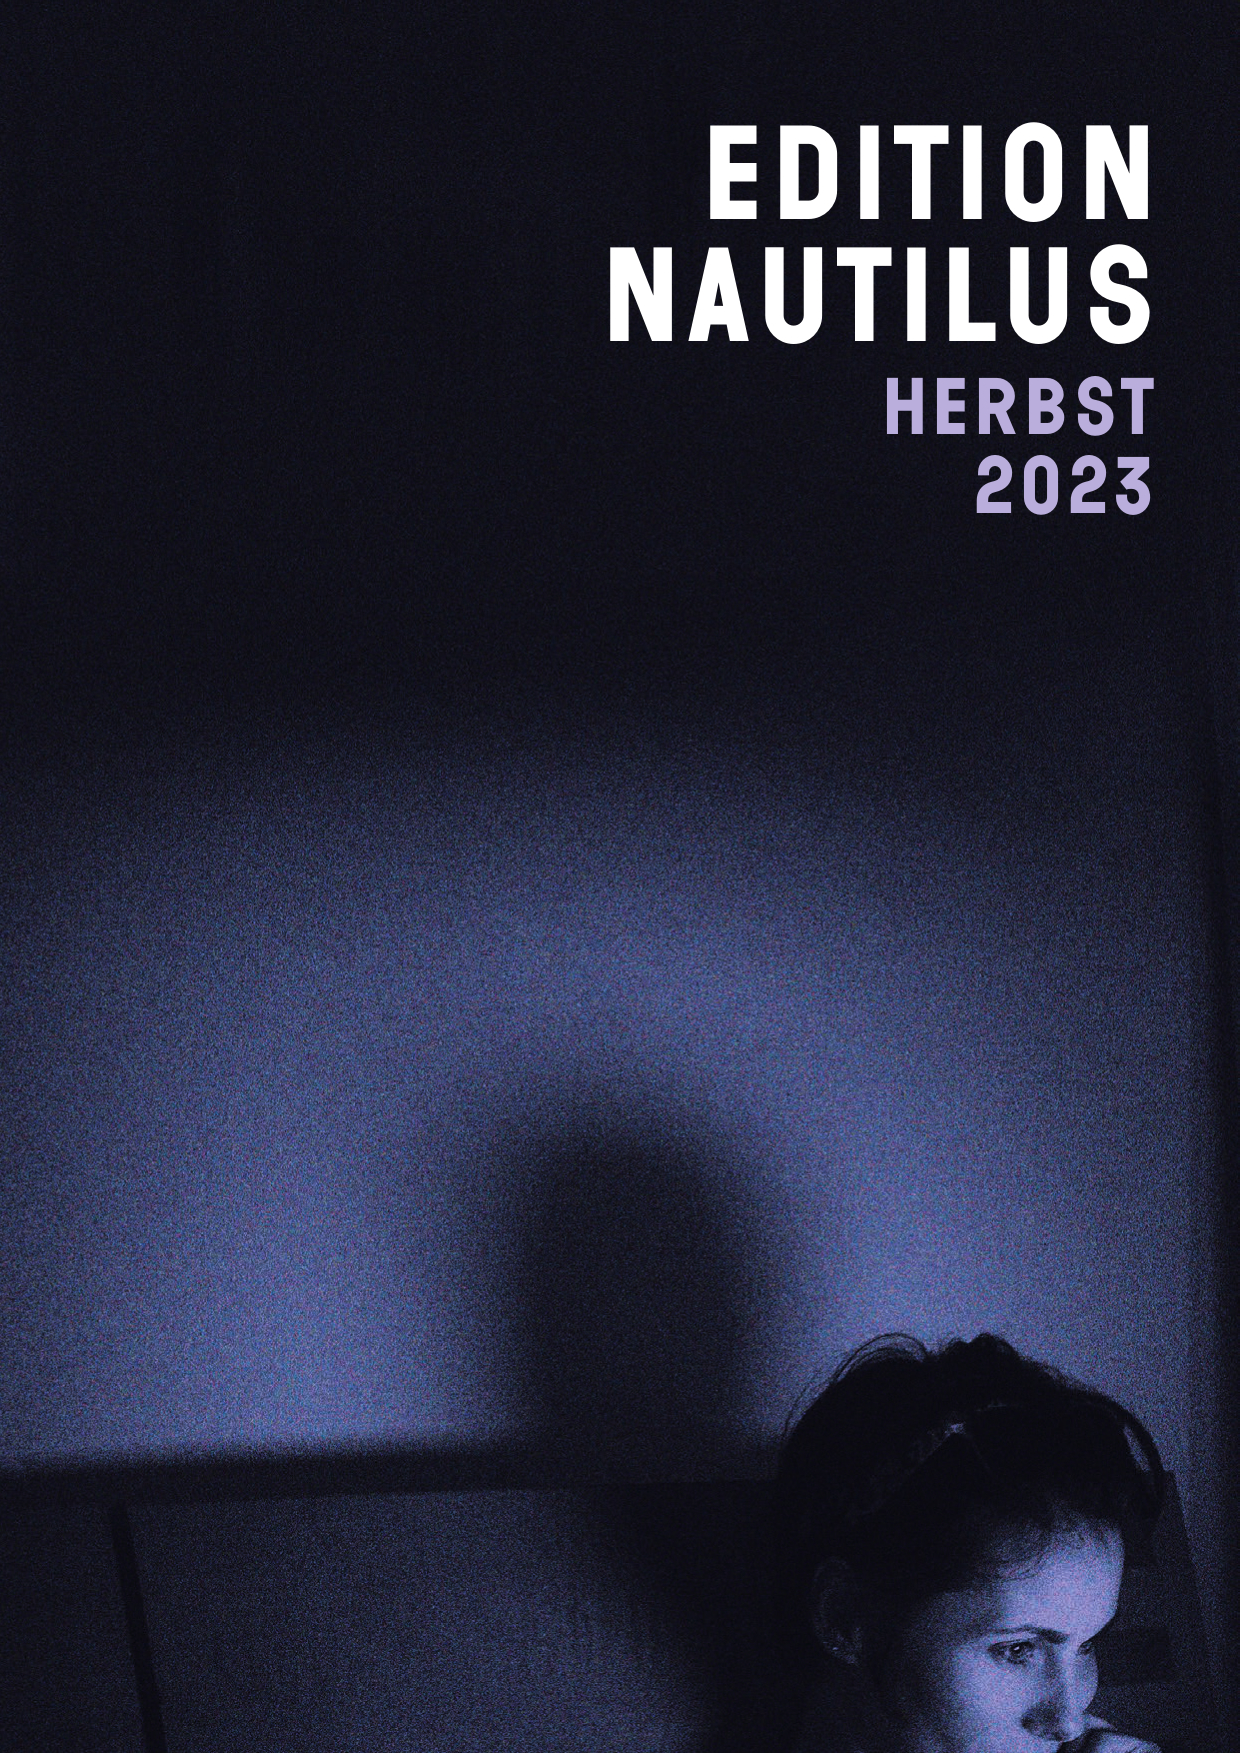 Vorschau Edition Nautilus Herbst 2023